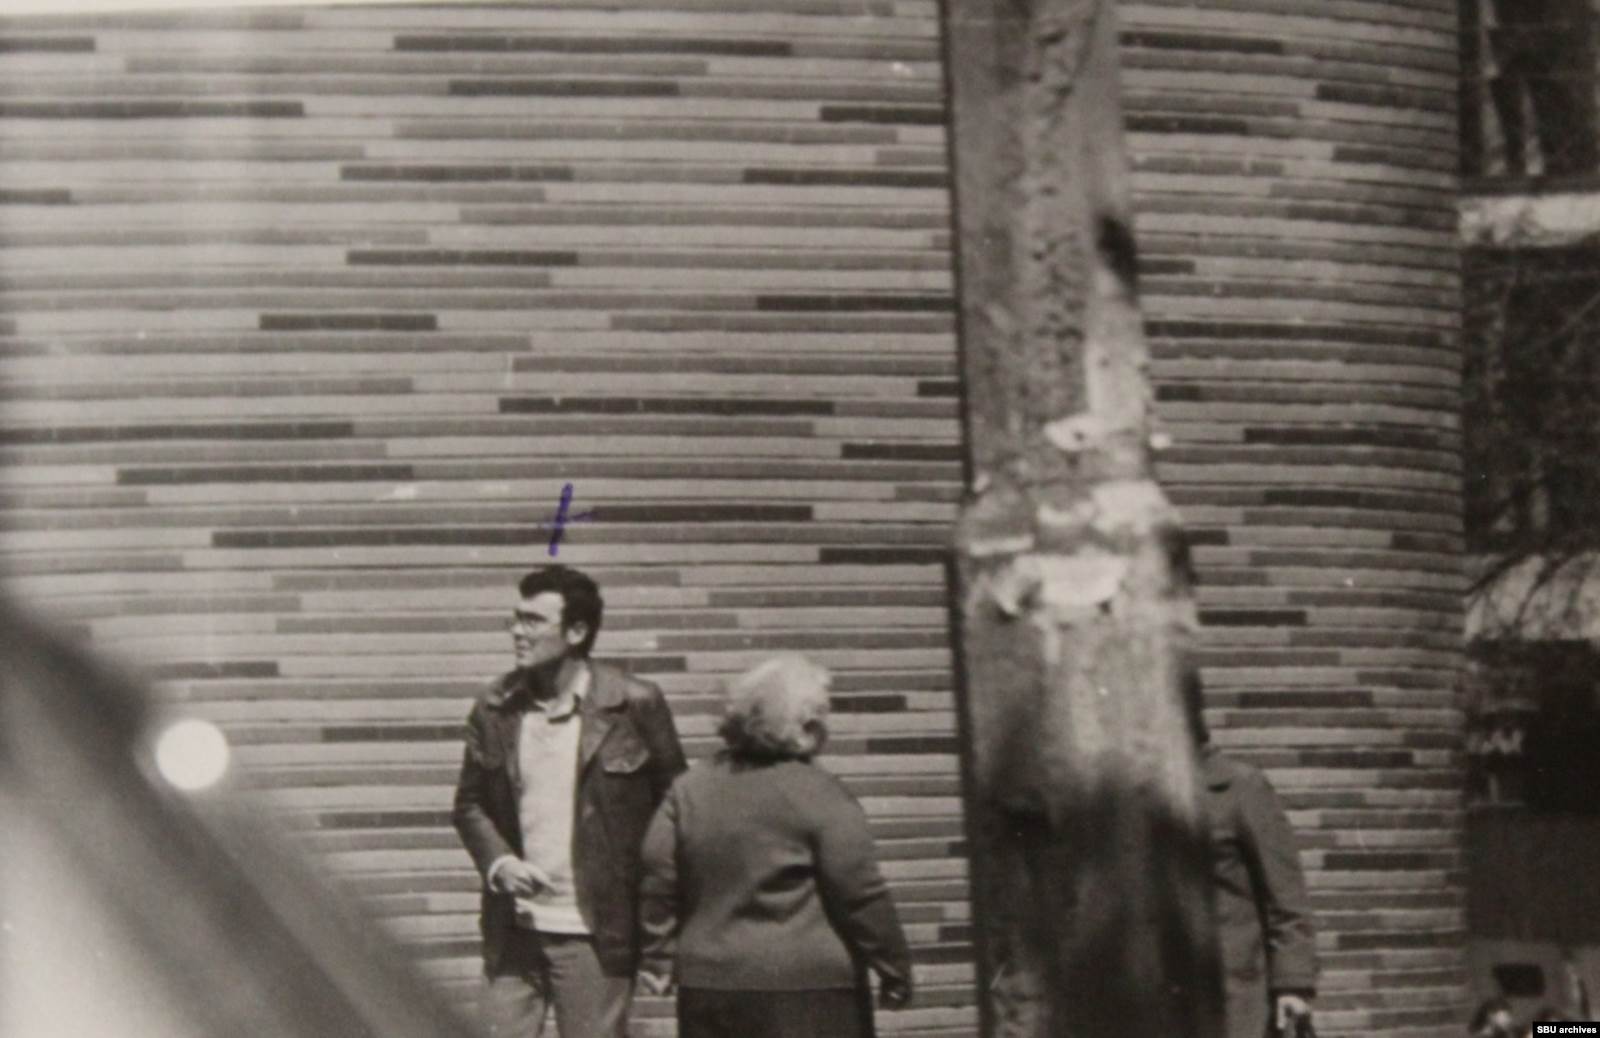  Рудольф Каценбоген со знакомыми. Киев, 1980-1981. Фото КГБ скрытой камерой. На части снимков запечатлен Андреевский спуск